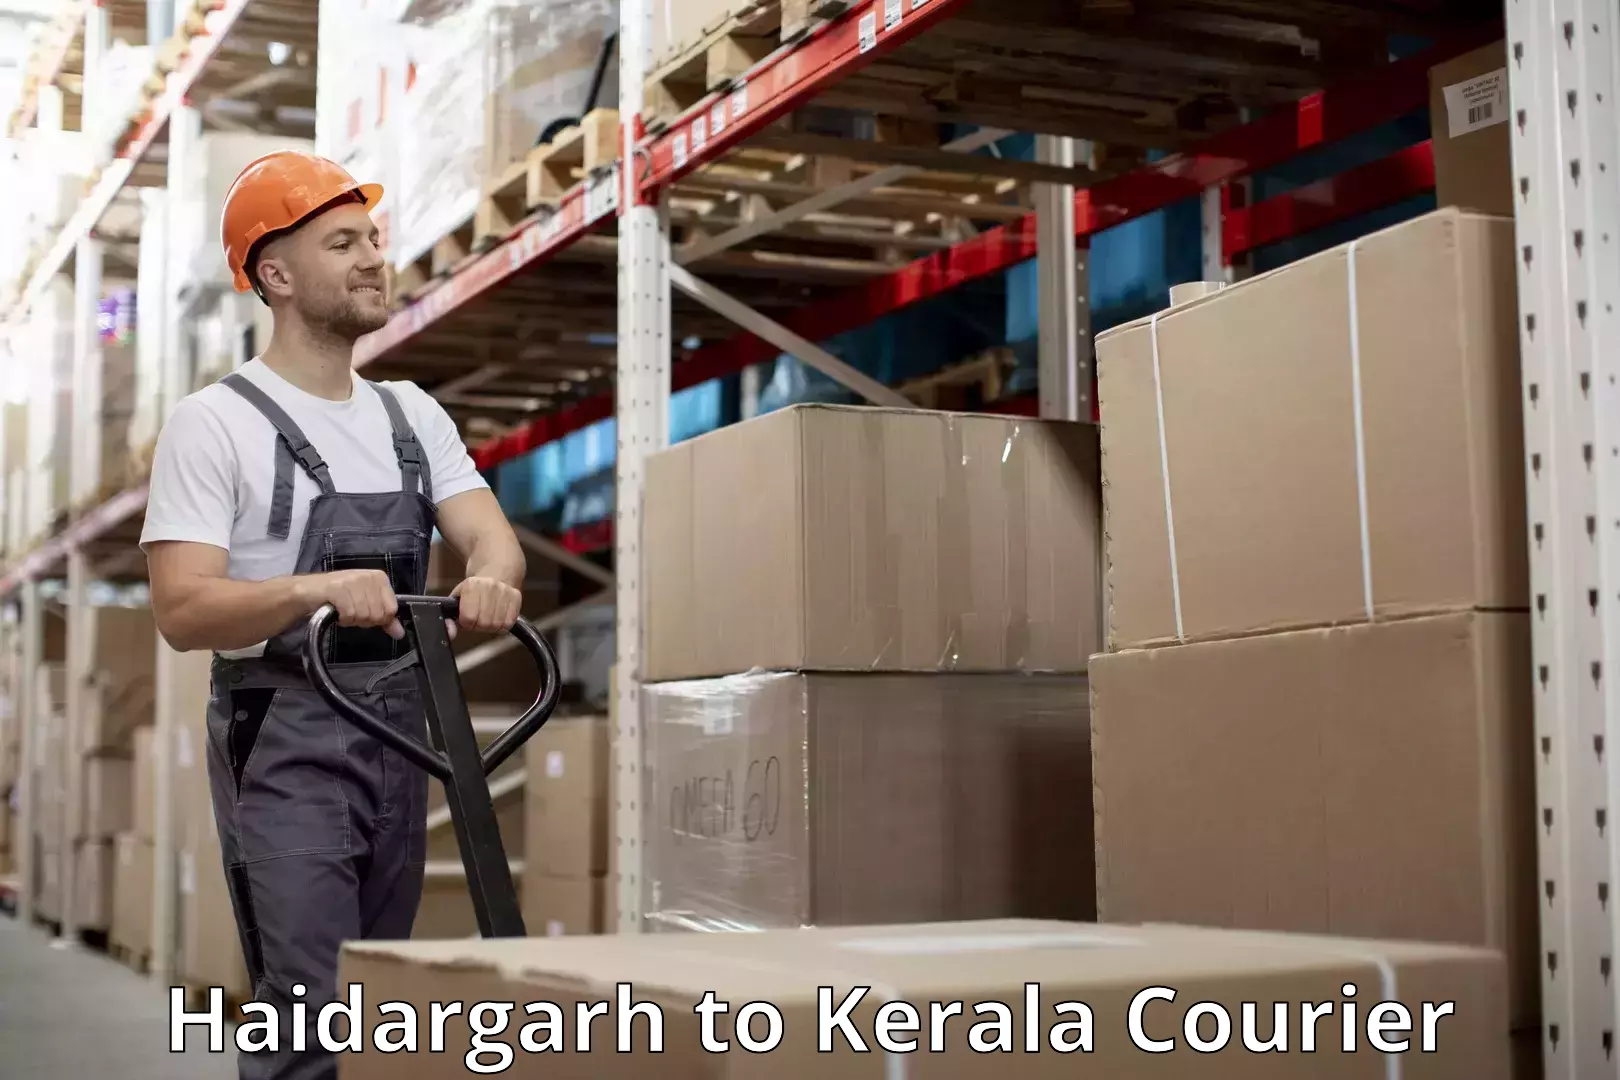 Excess baggage transport Haidargarh to Kerala